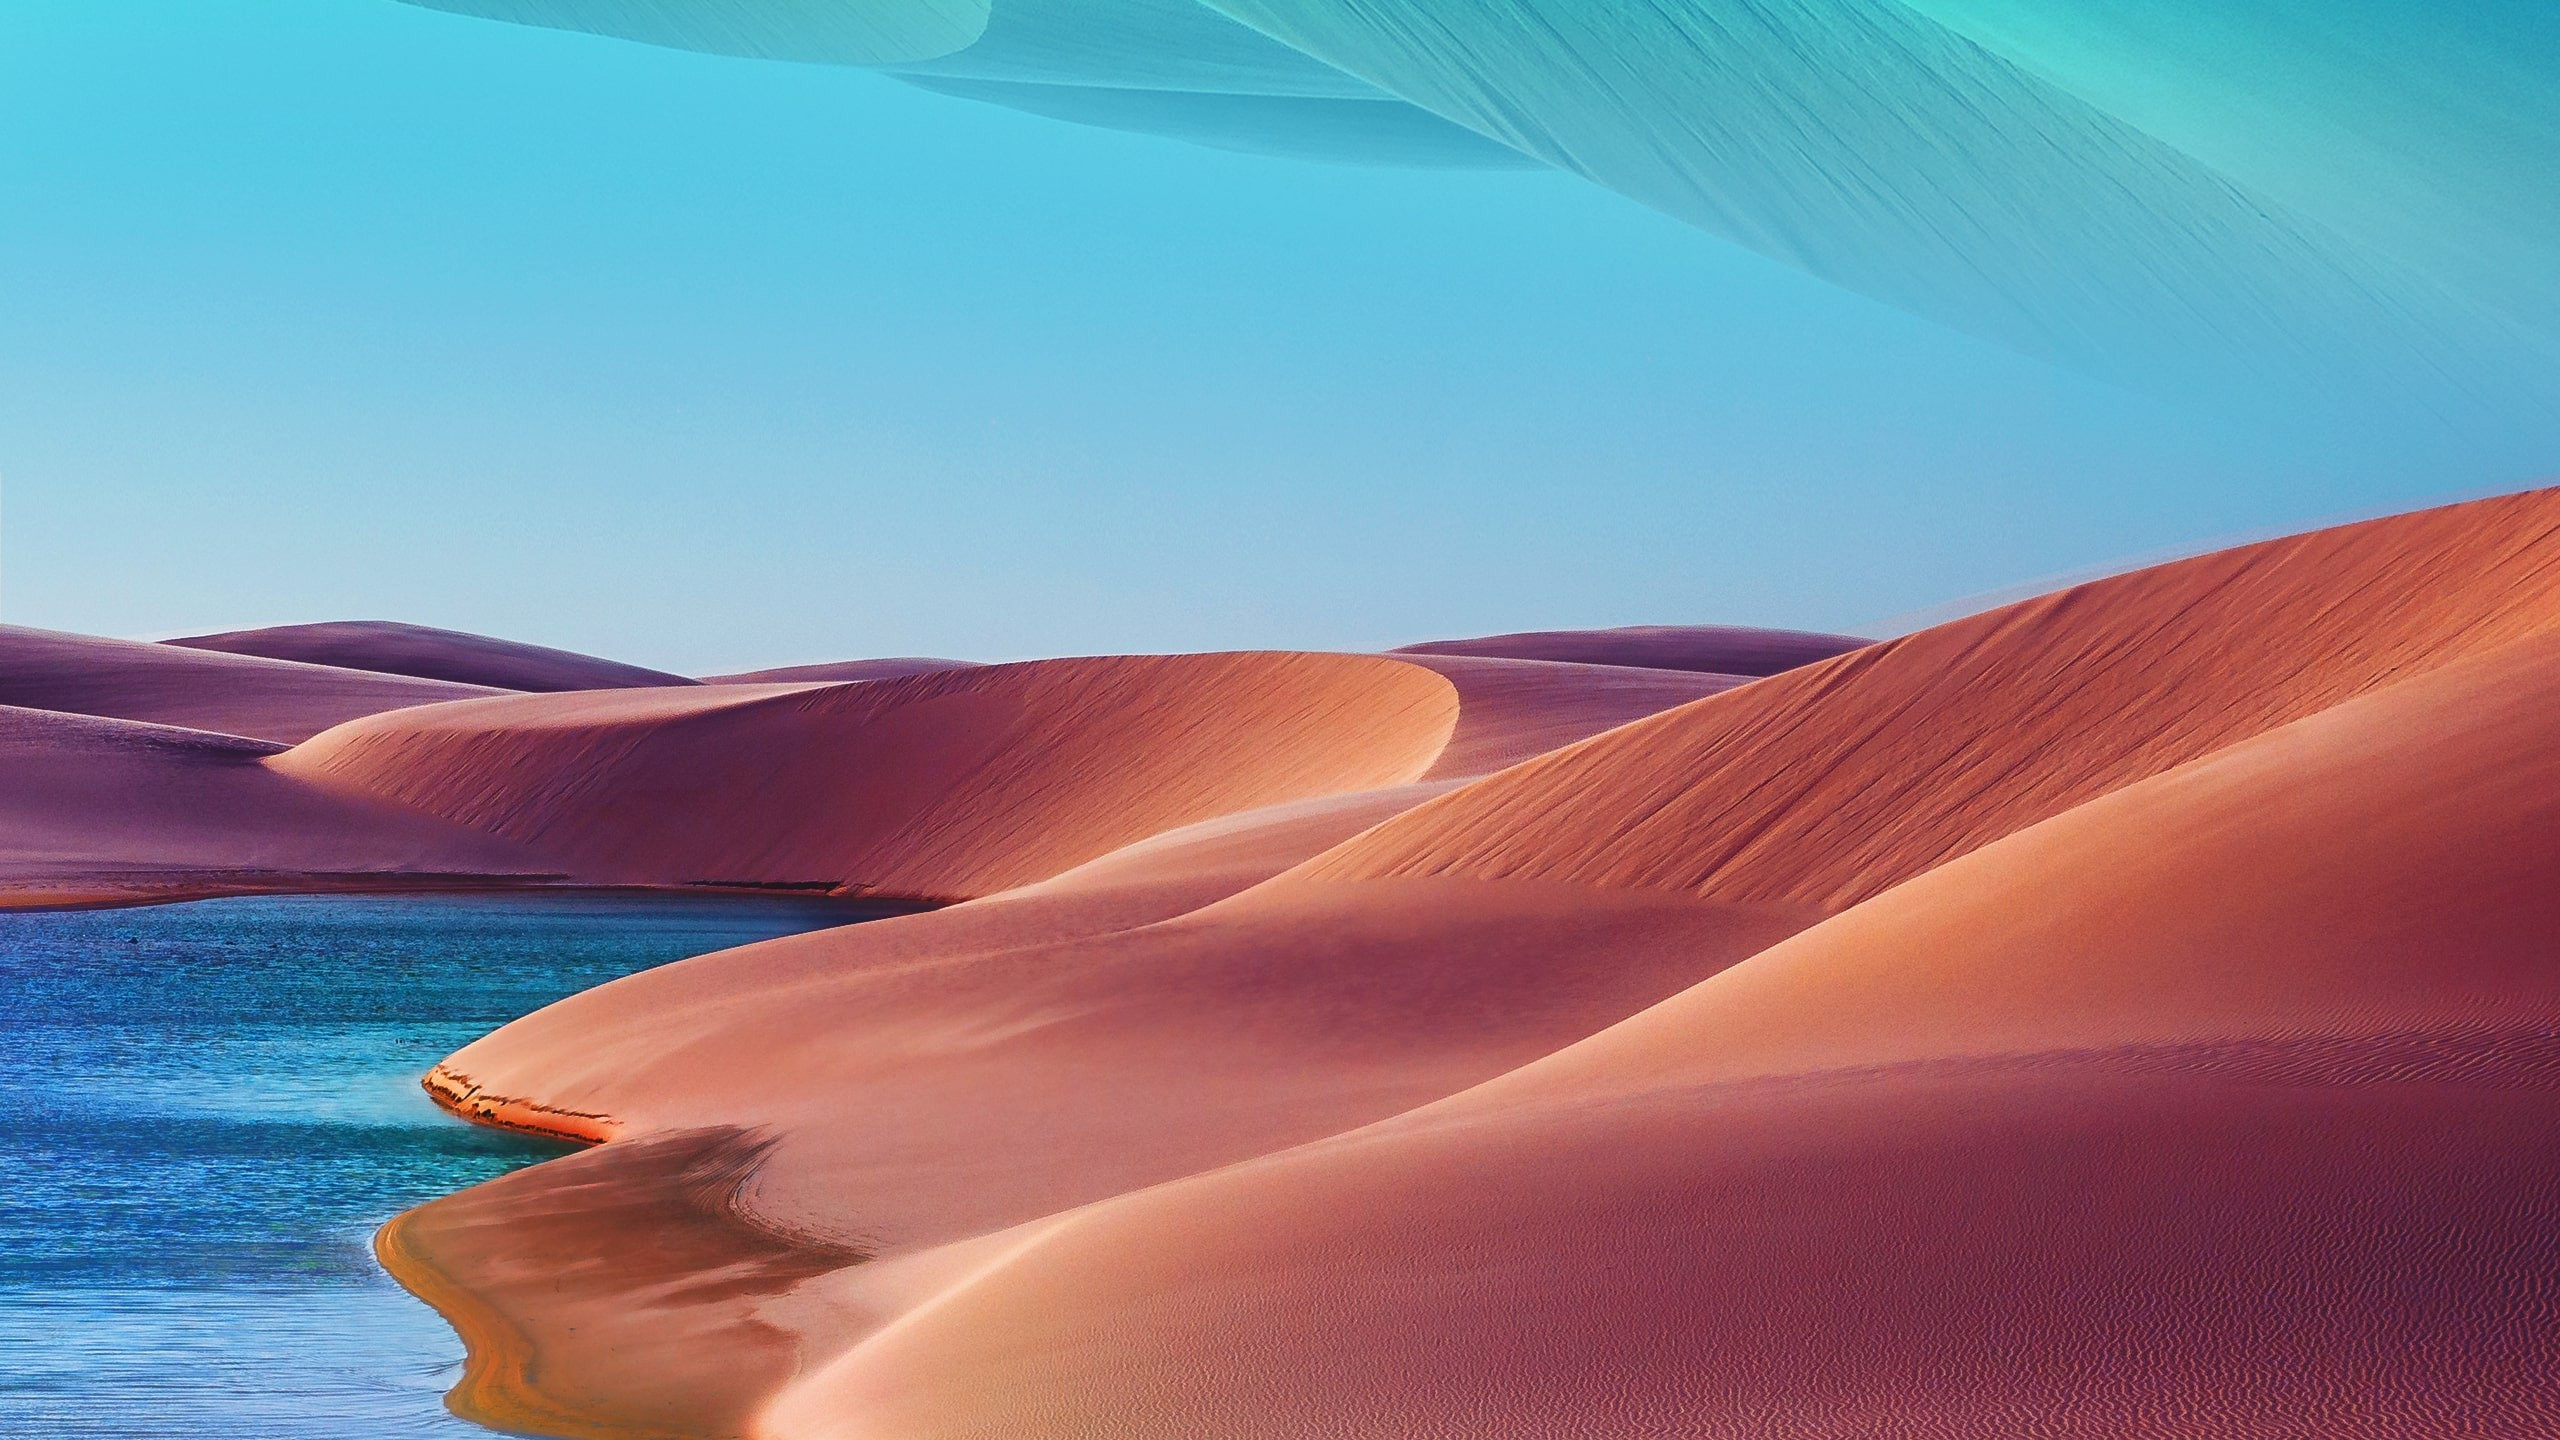 Desert dunes, lake, blue sky, hot day wallpaper 2560x1440